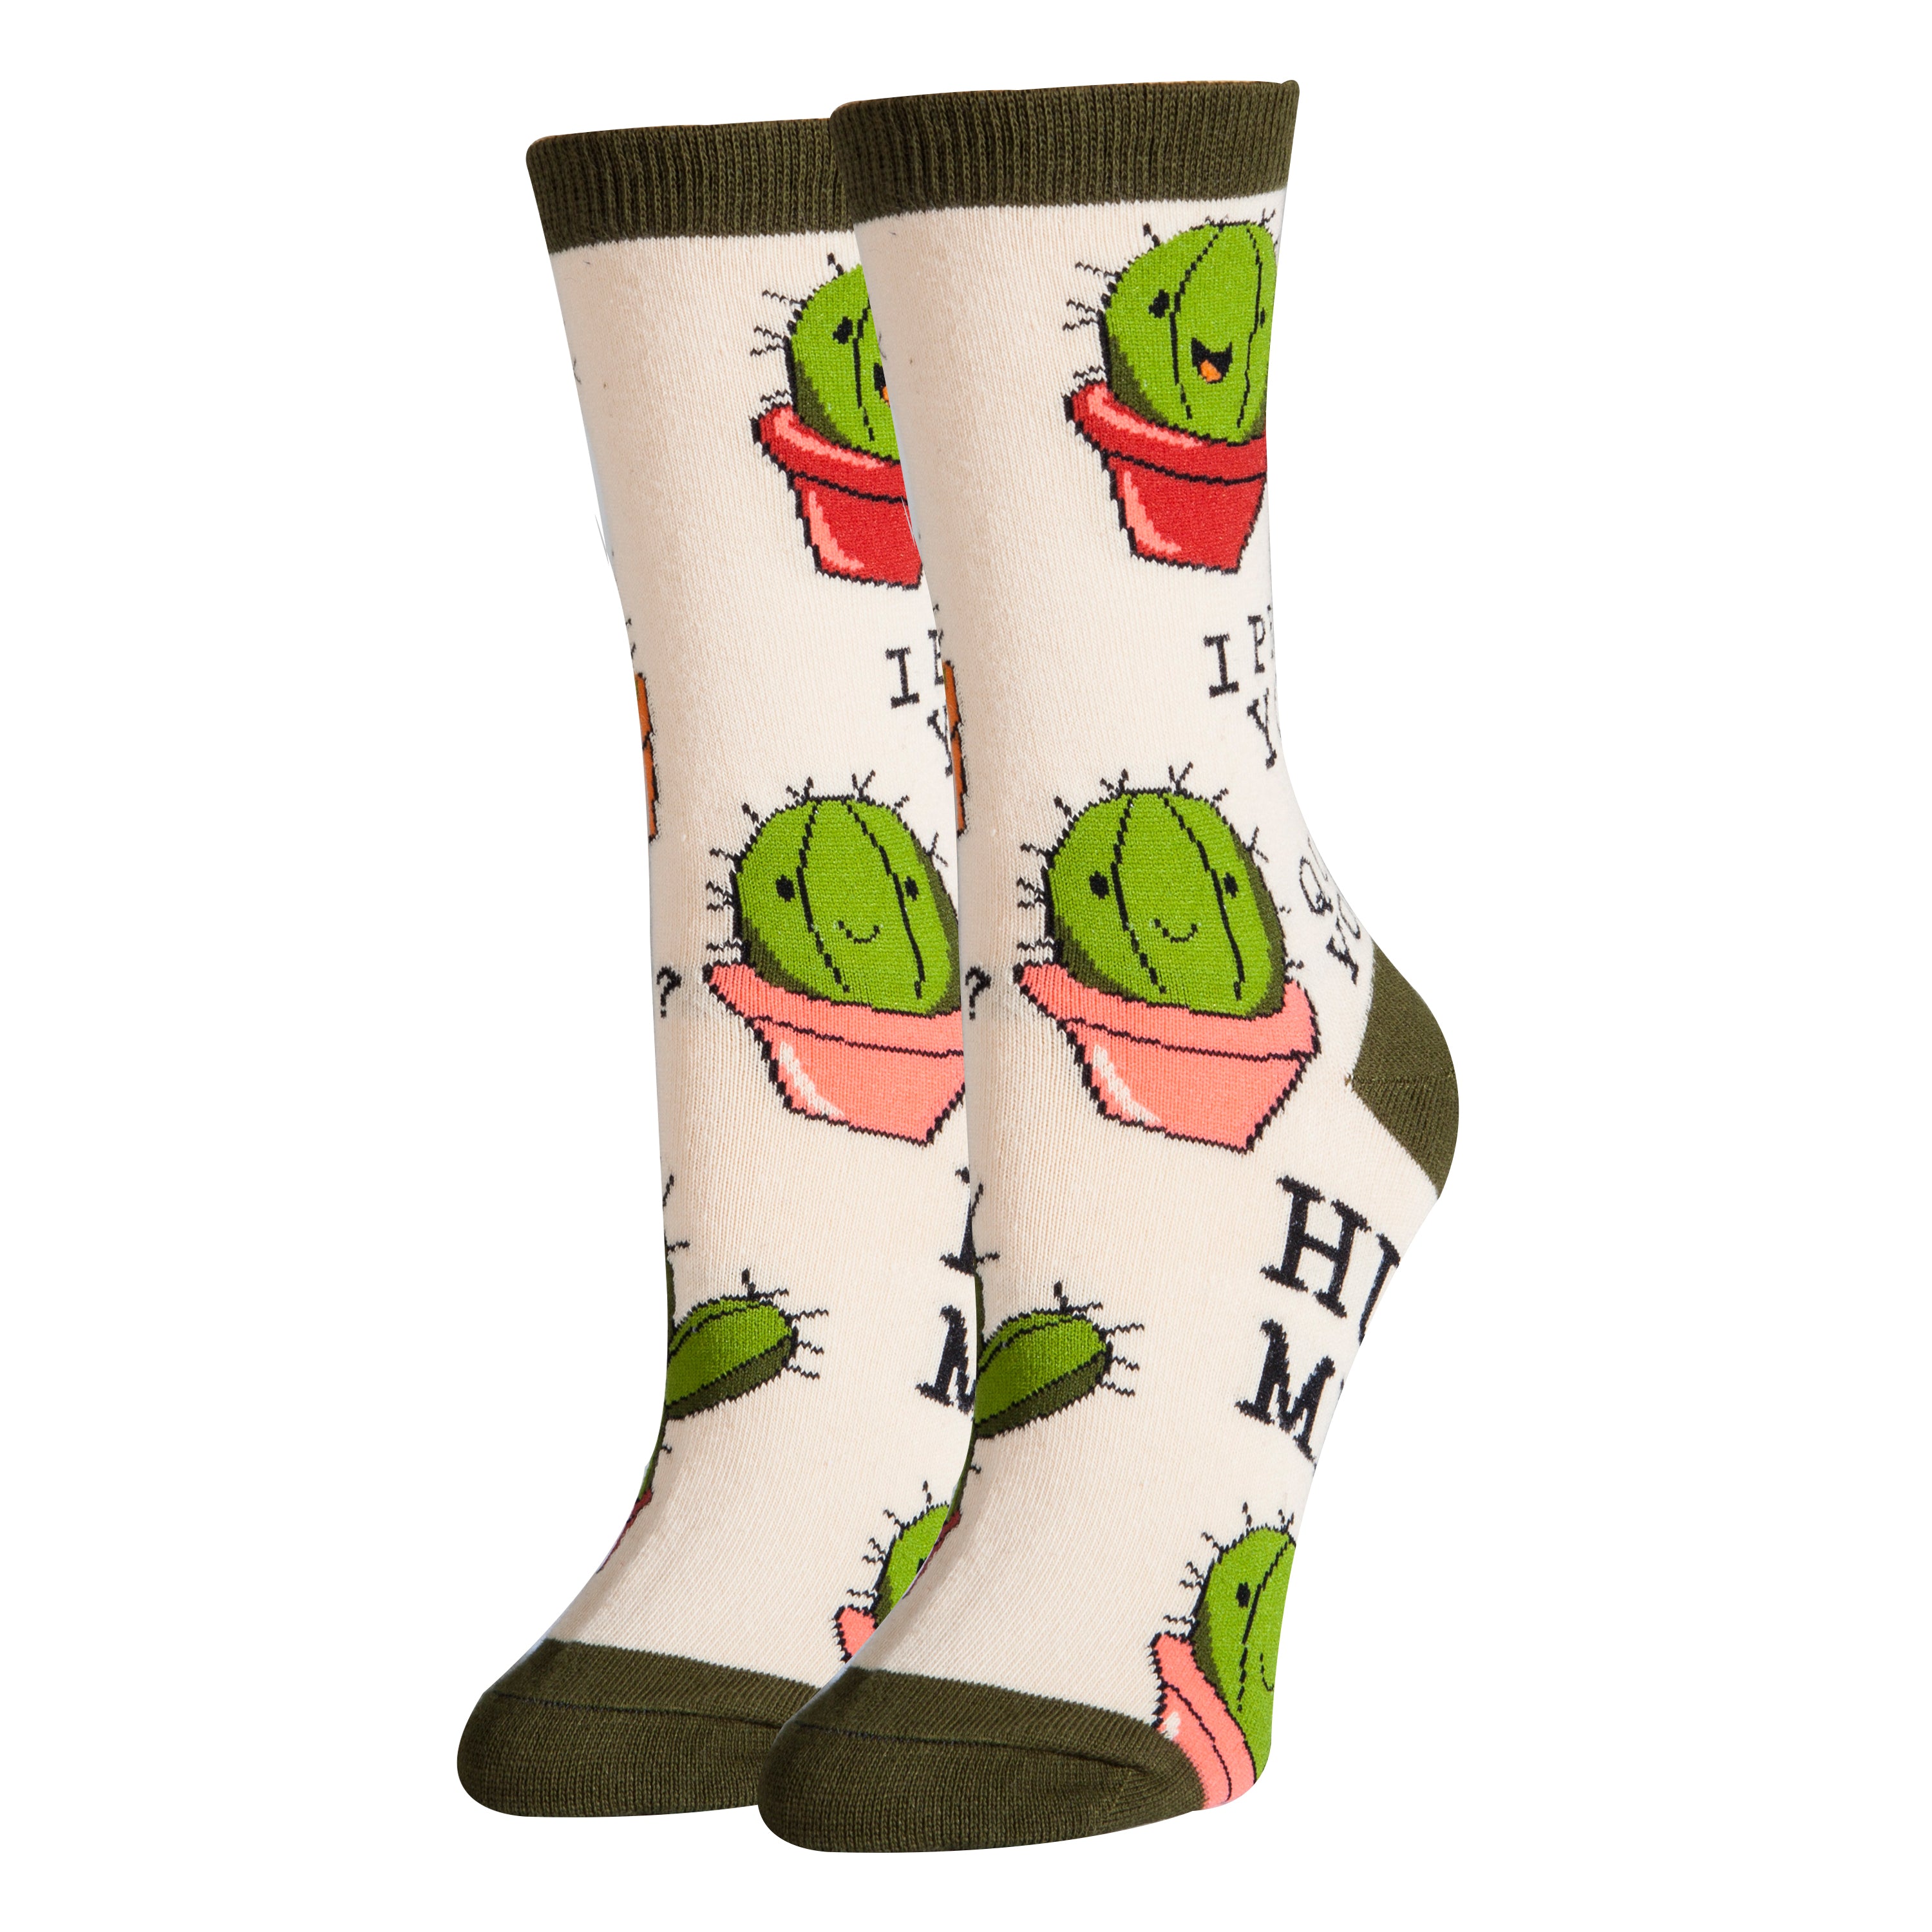 Love Succs Socks | Novelty Crew Socks For Women